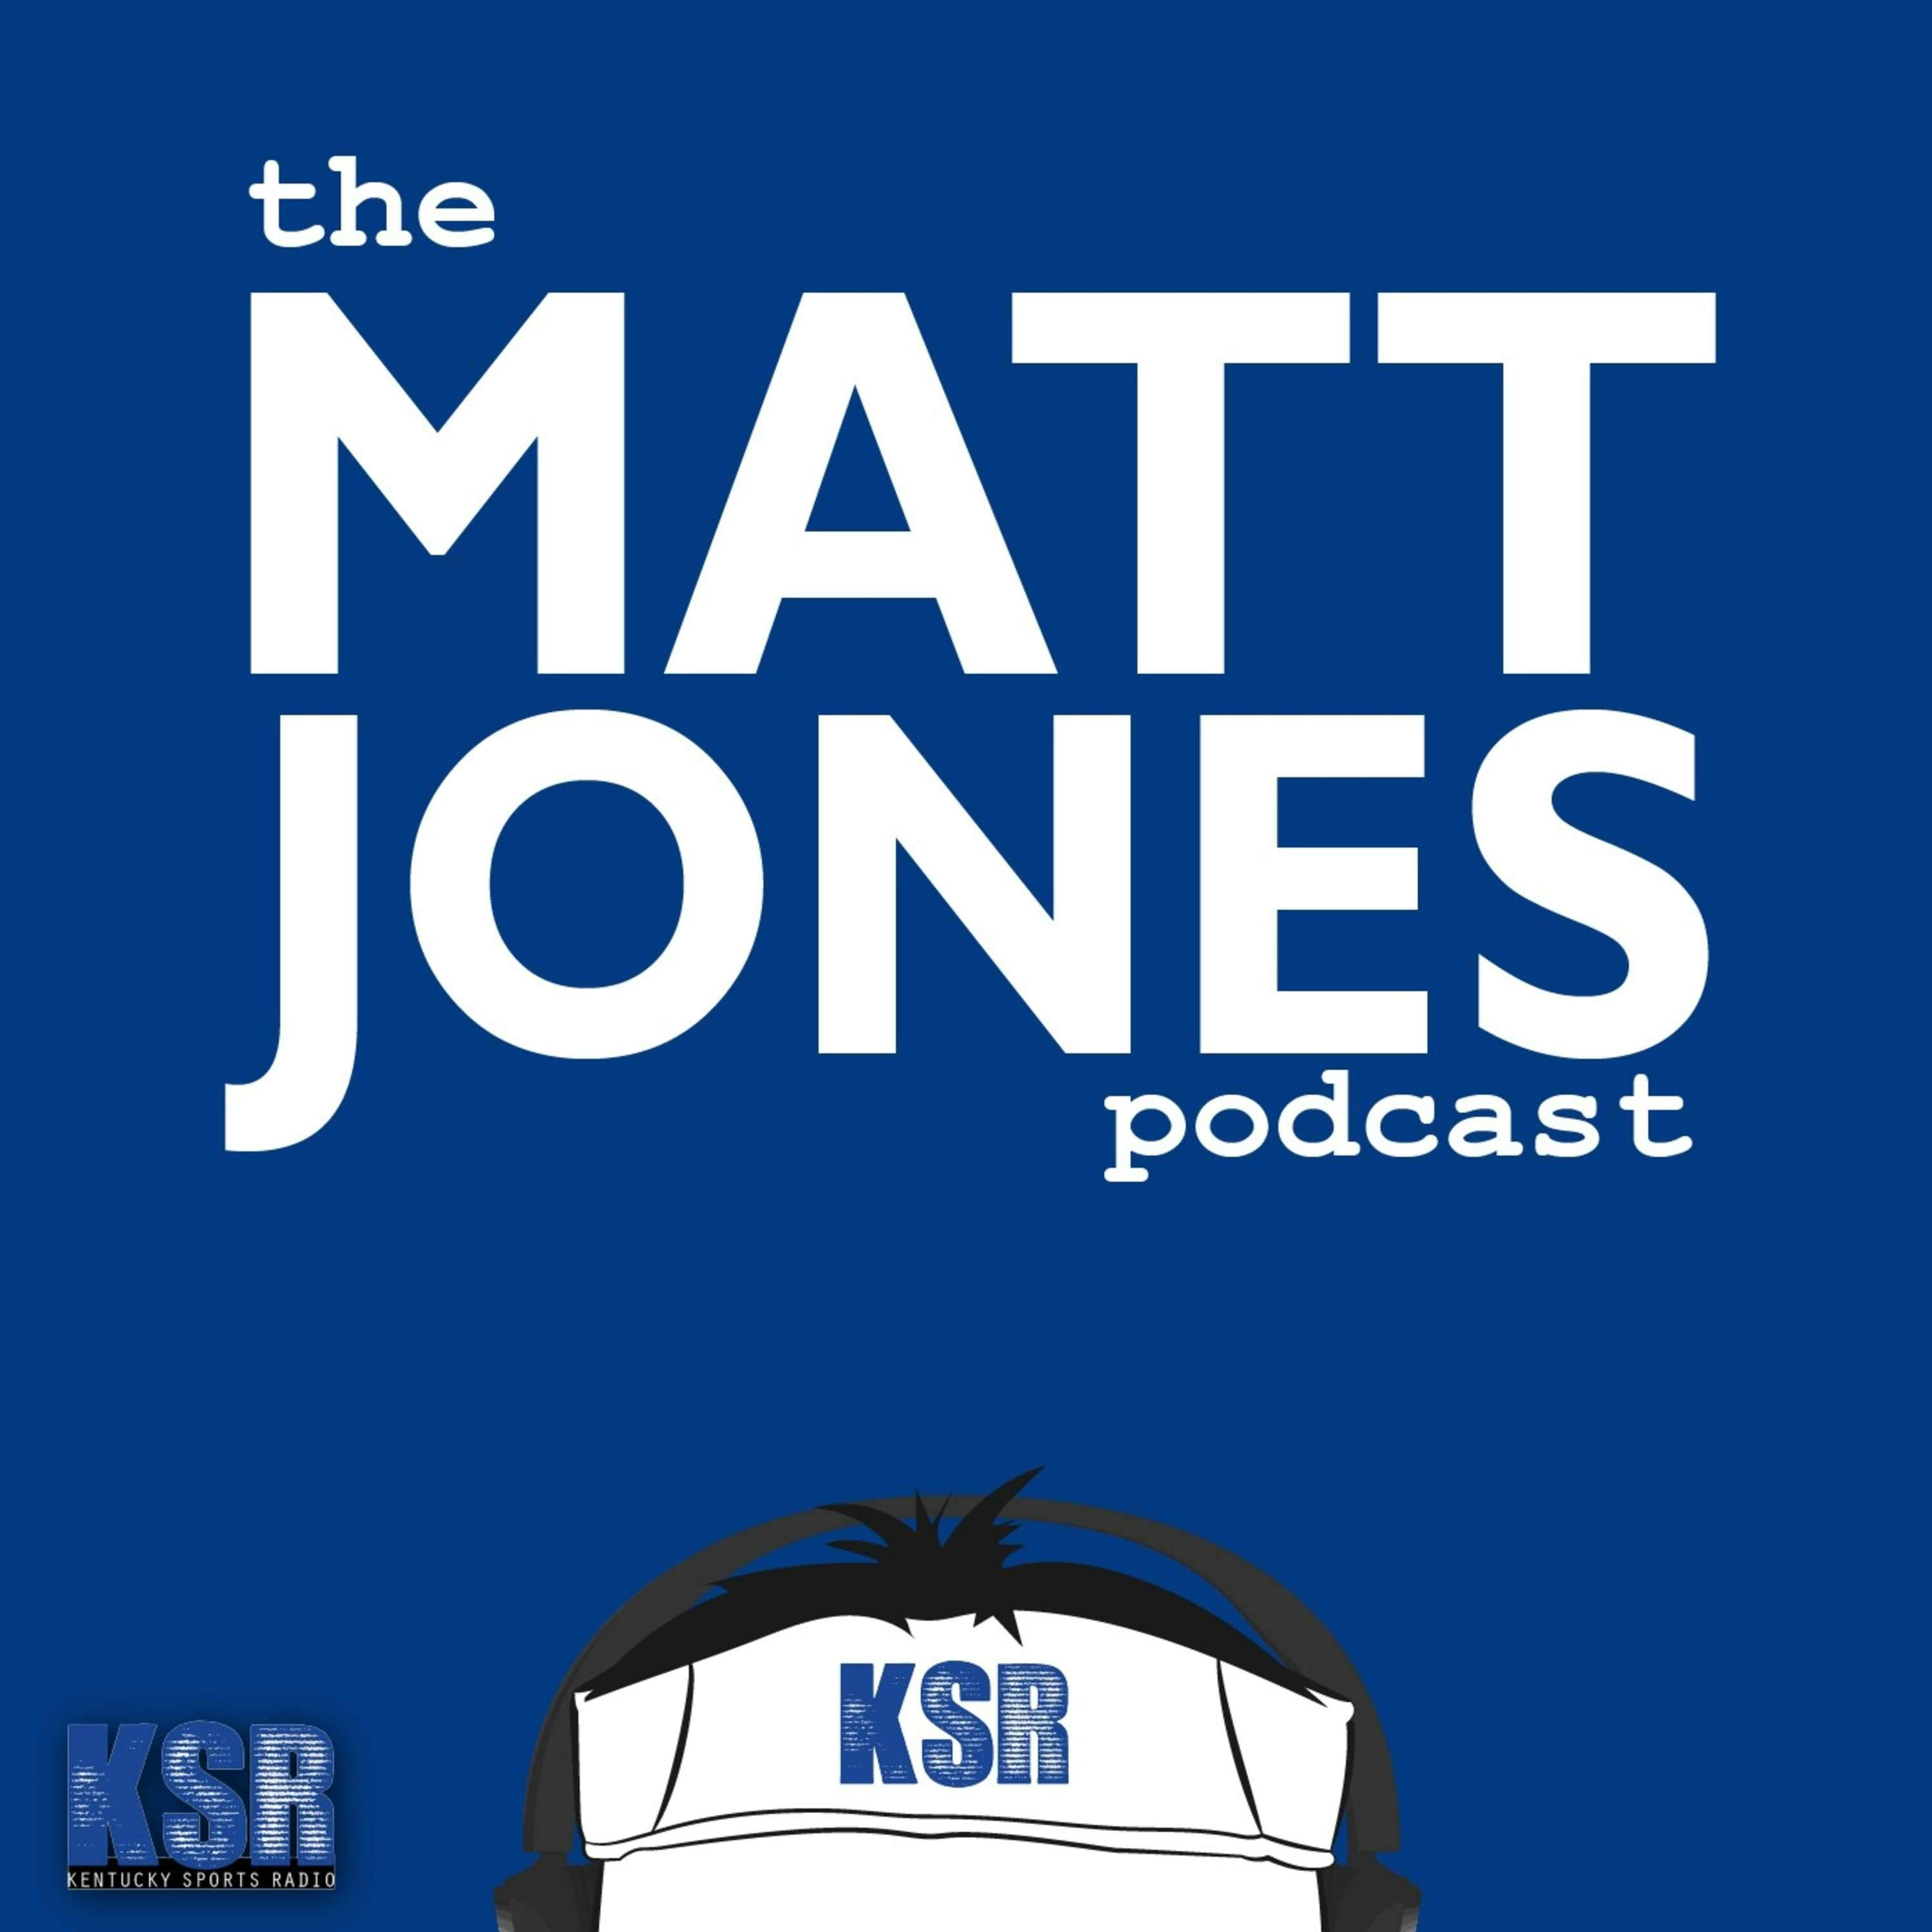 The Matt Jones Podcast: E49 Ryen Russillo & Vanetti